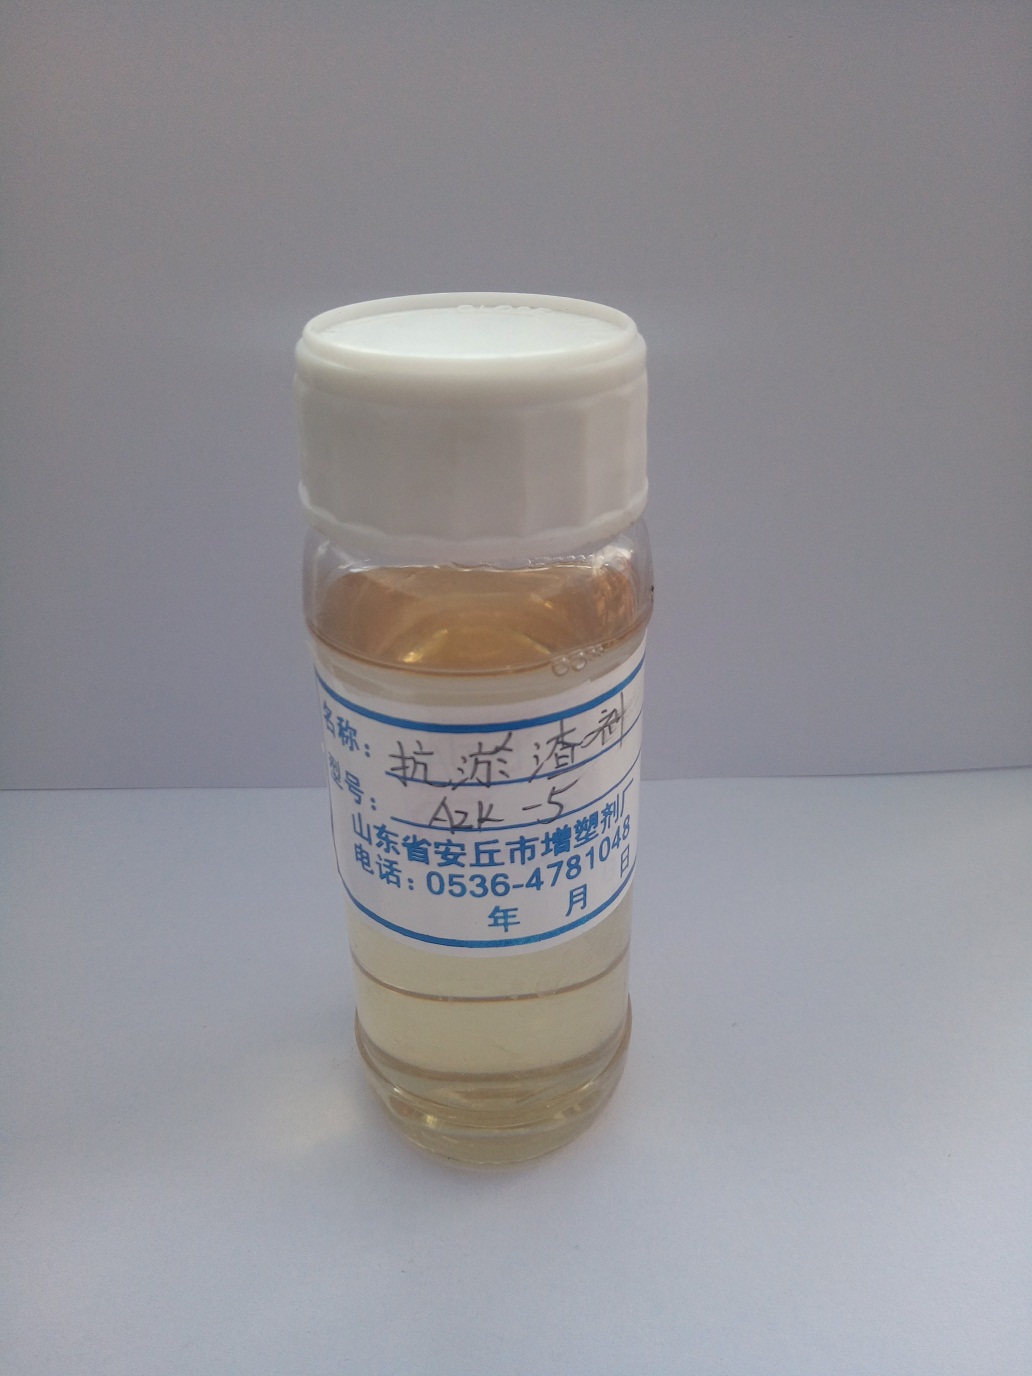 AZK-5抗淤渣剂